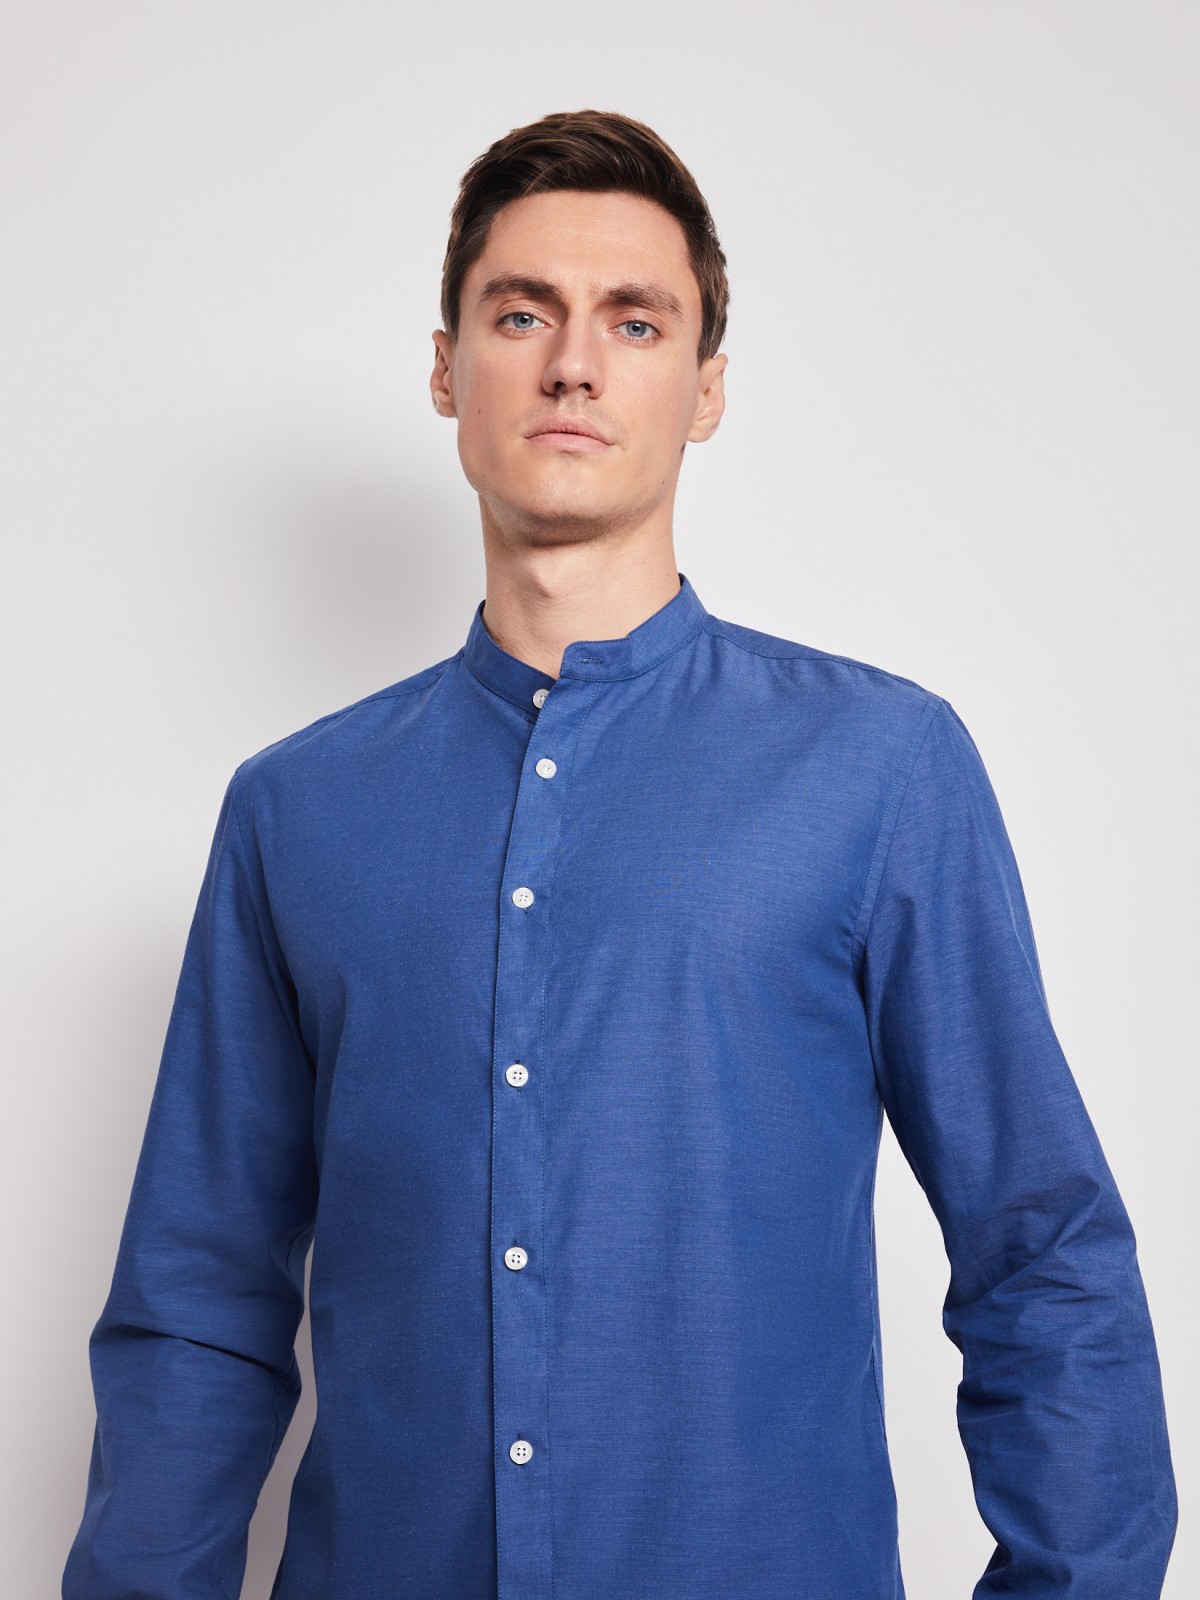 Однотонная рубашка с воротником-стойкой zolla 21211214R052, цвет голубой, размер S - фото 2